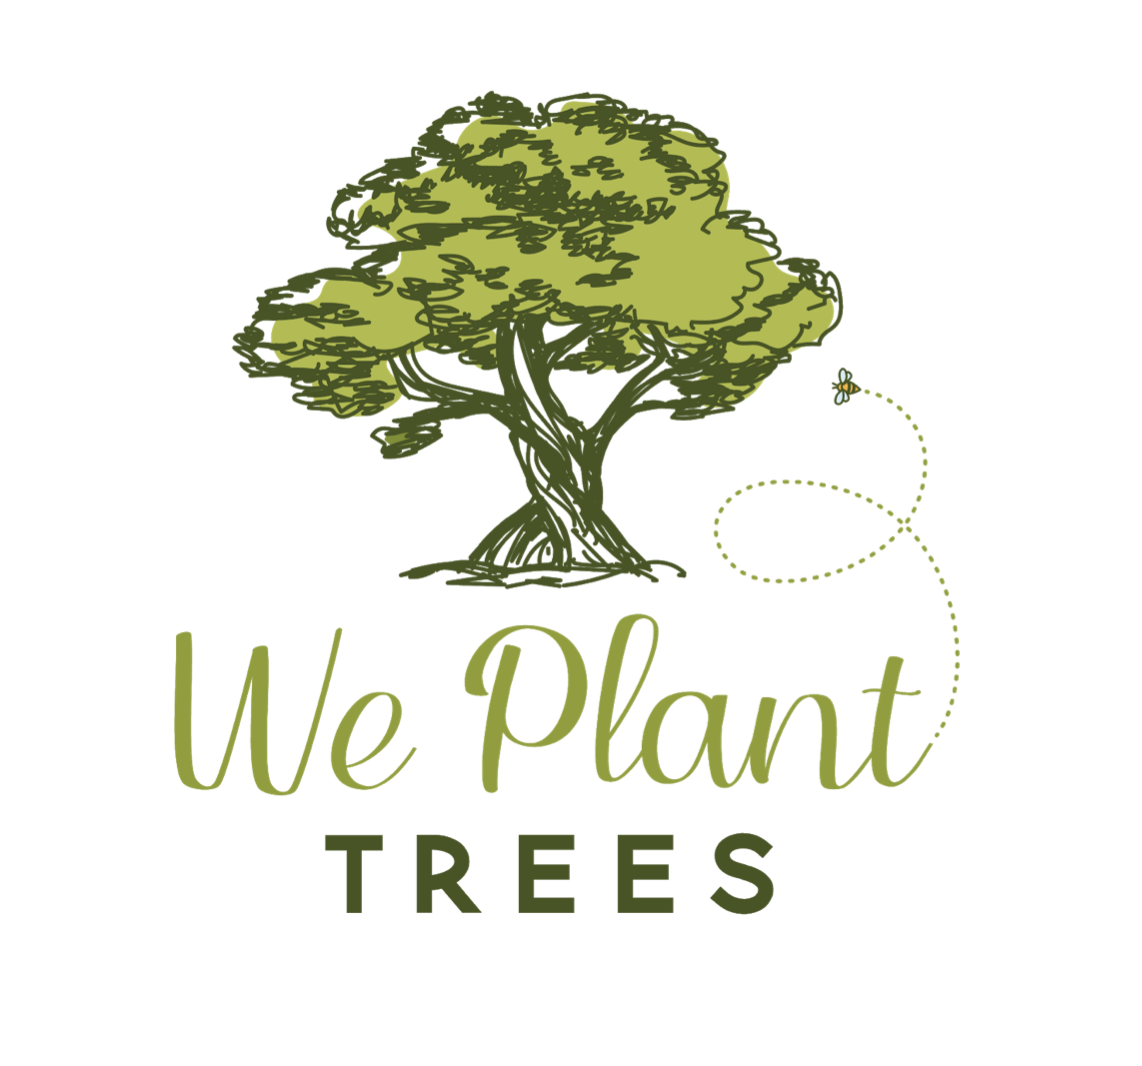 We plant tress logo